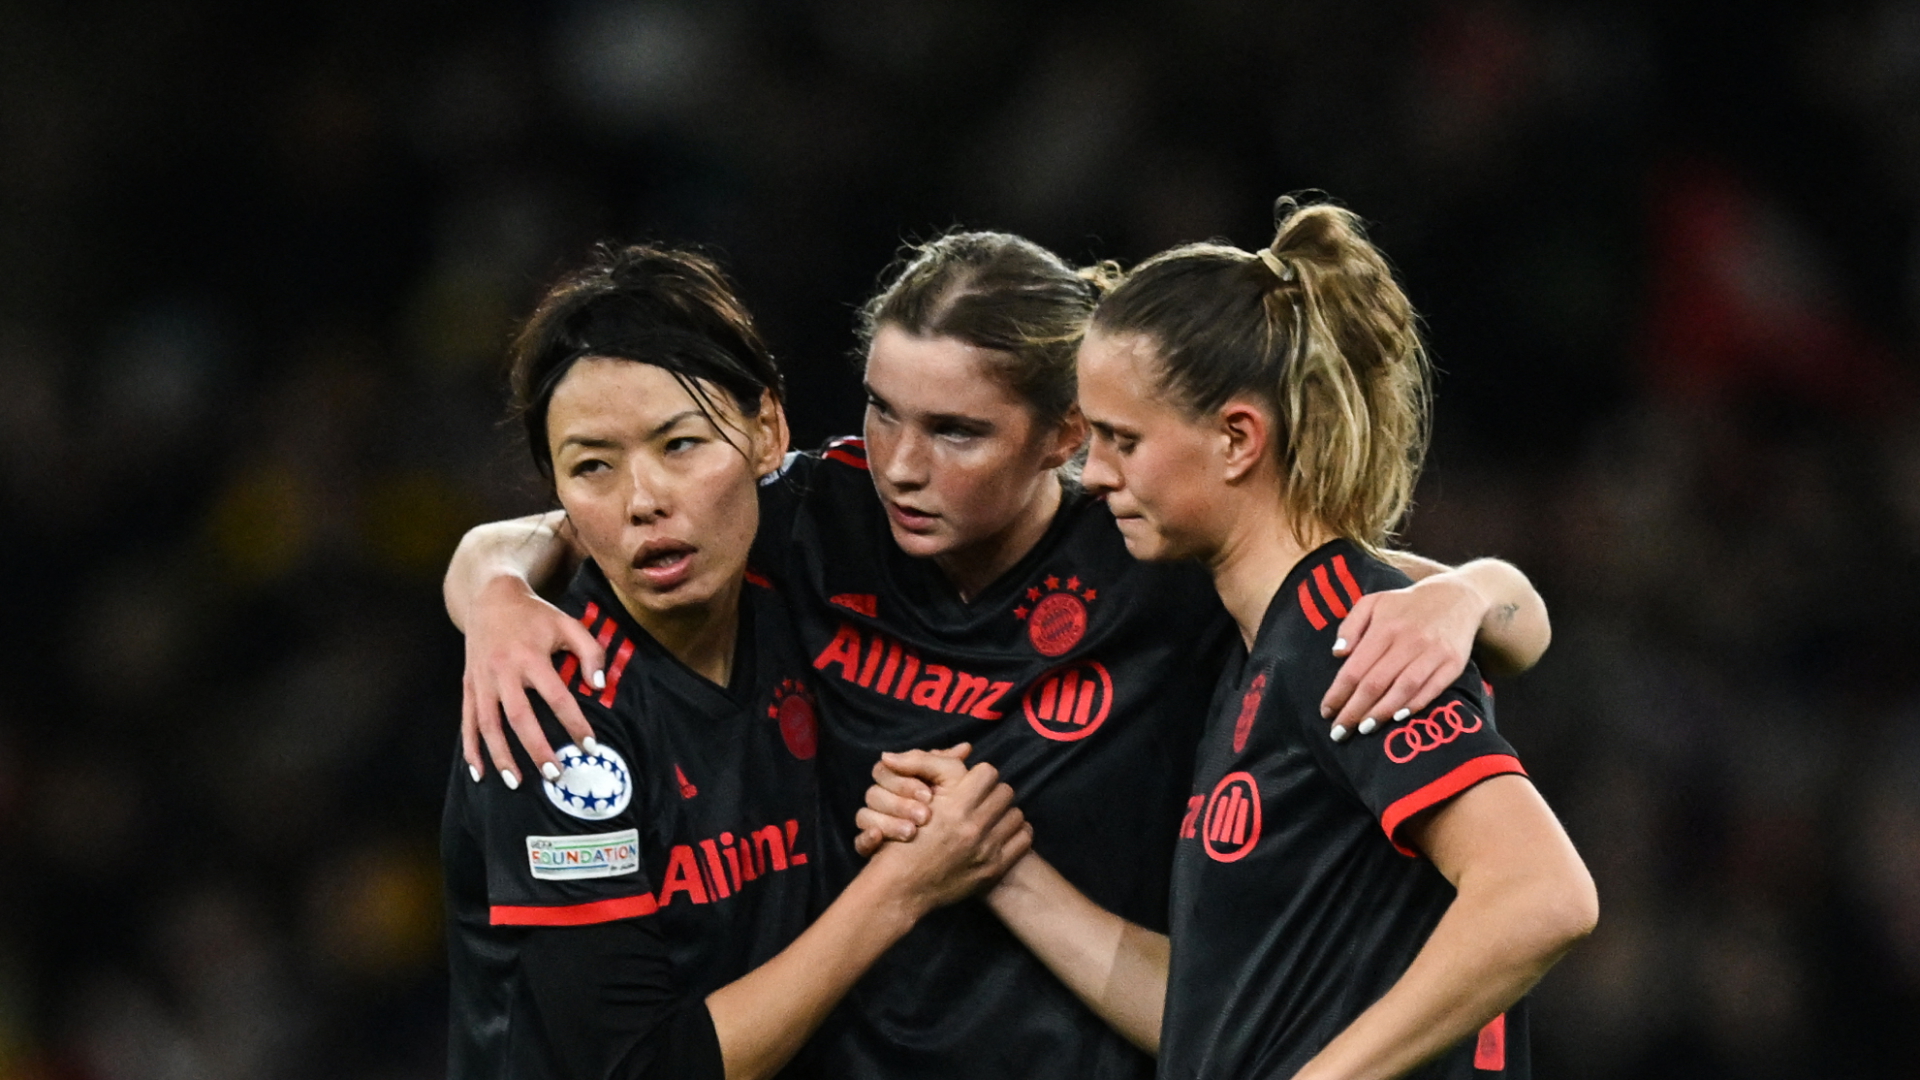 Die Fußballerinnen Klara Buhl, Karolina Vilhjalmsdottir und Saki Kumagai von Bayern München nach der Niederlage gegen WFC Arsenal.  | AFP